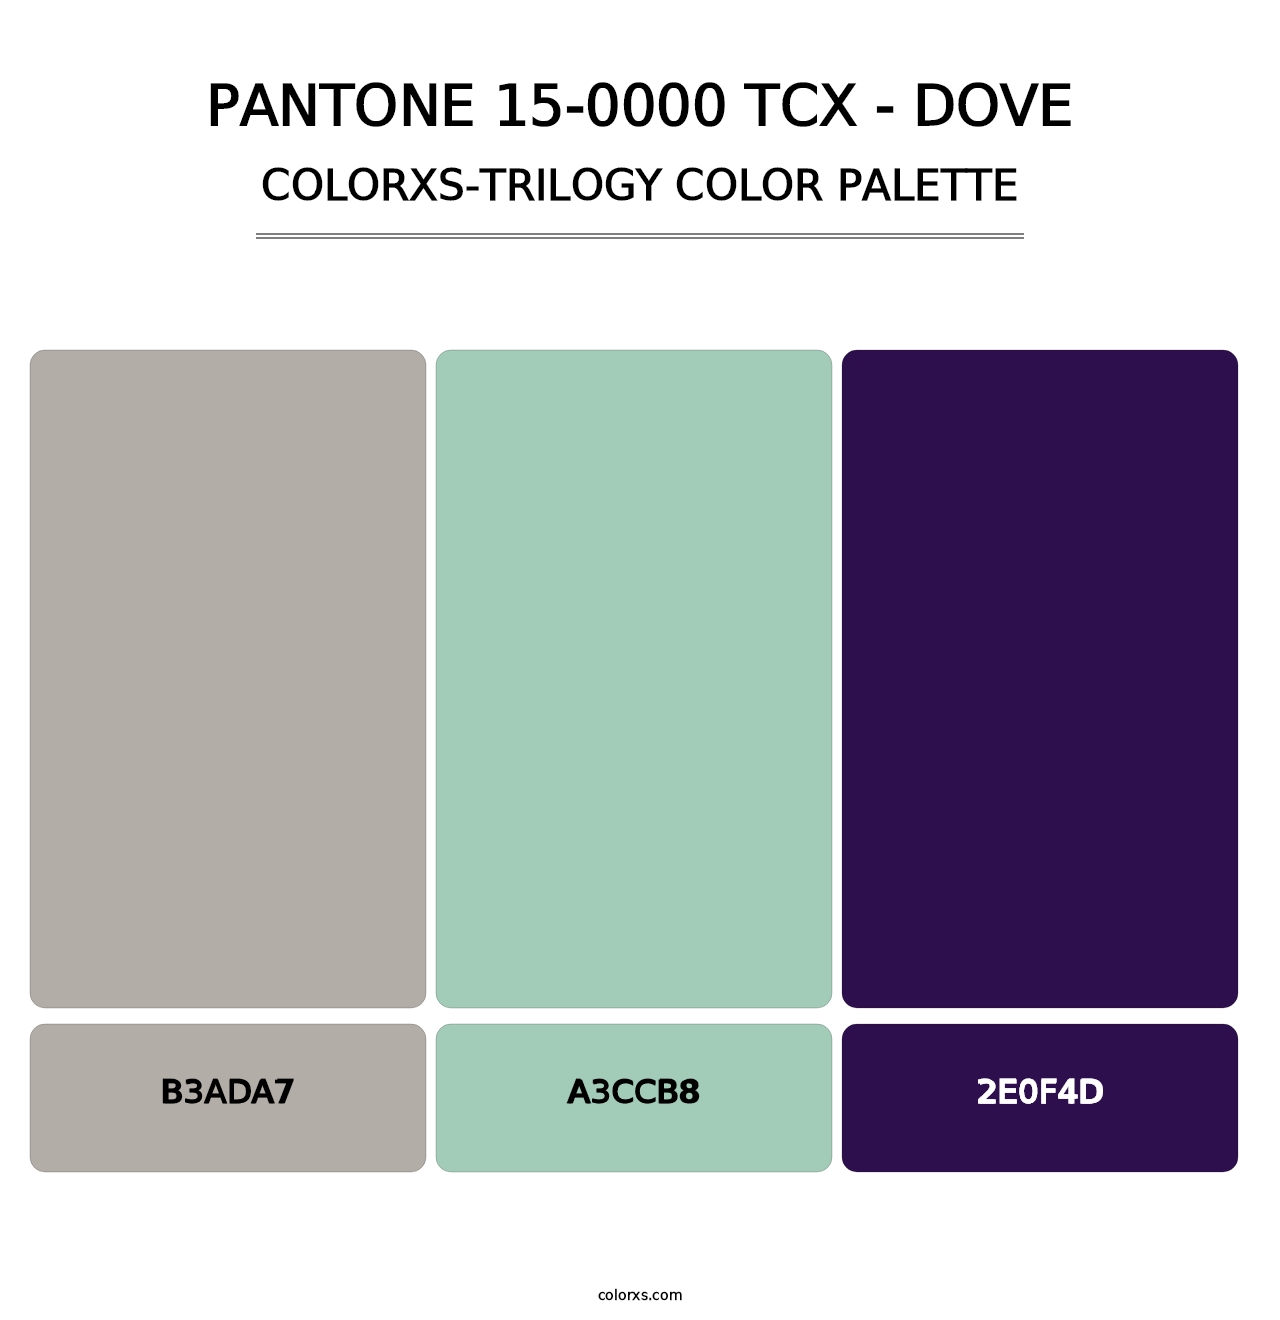 PANTONE 15-0000 TCX - Dove - Colorxs Trilogy Palette